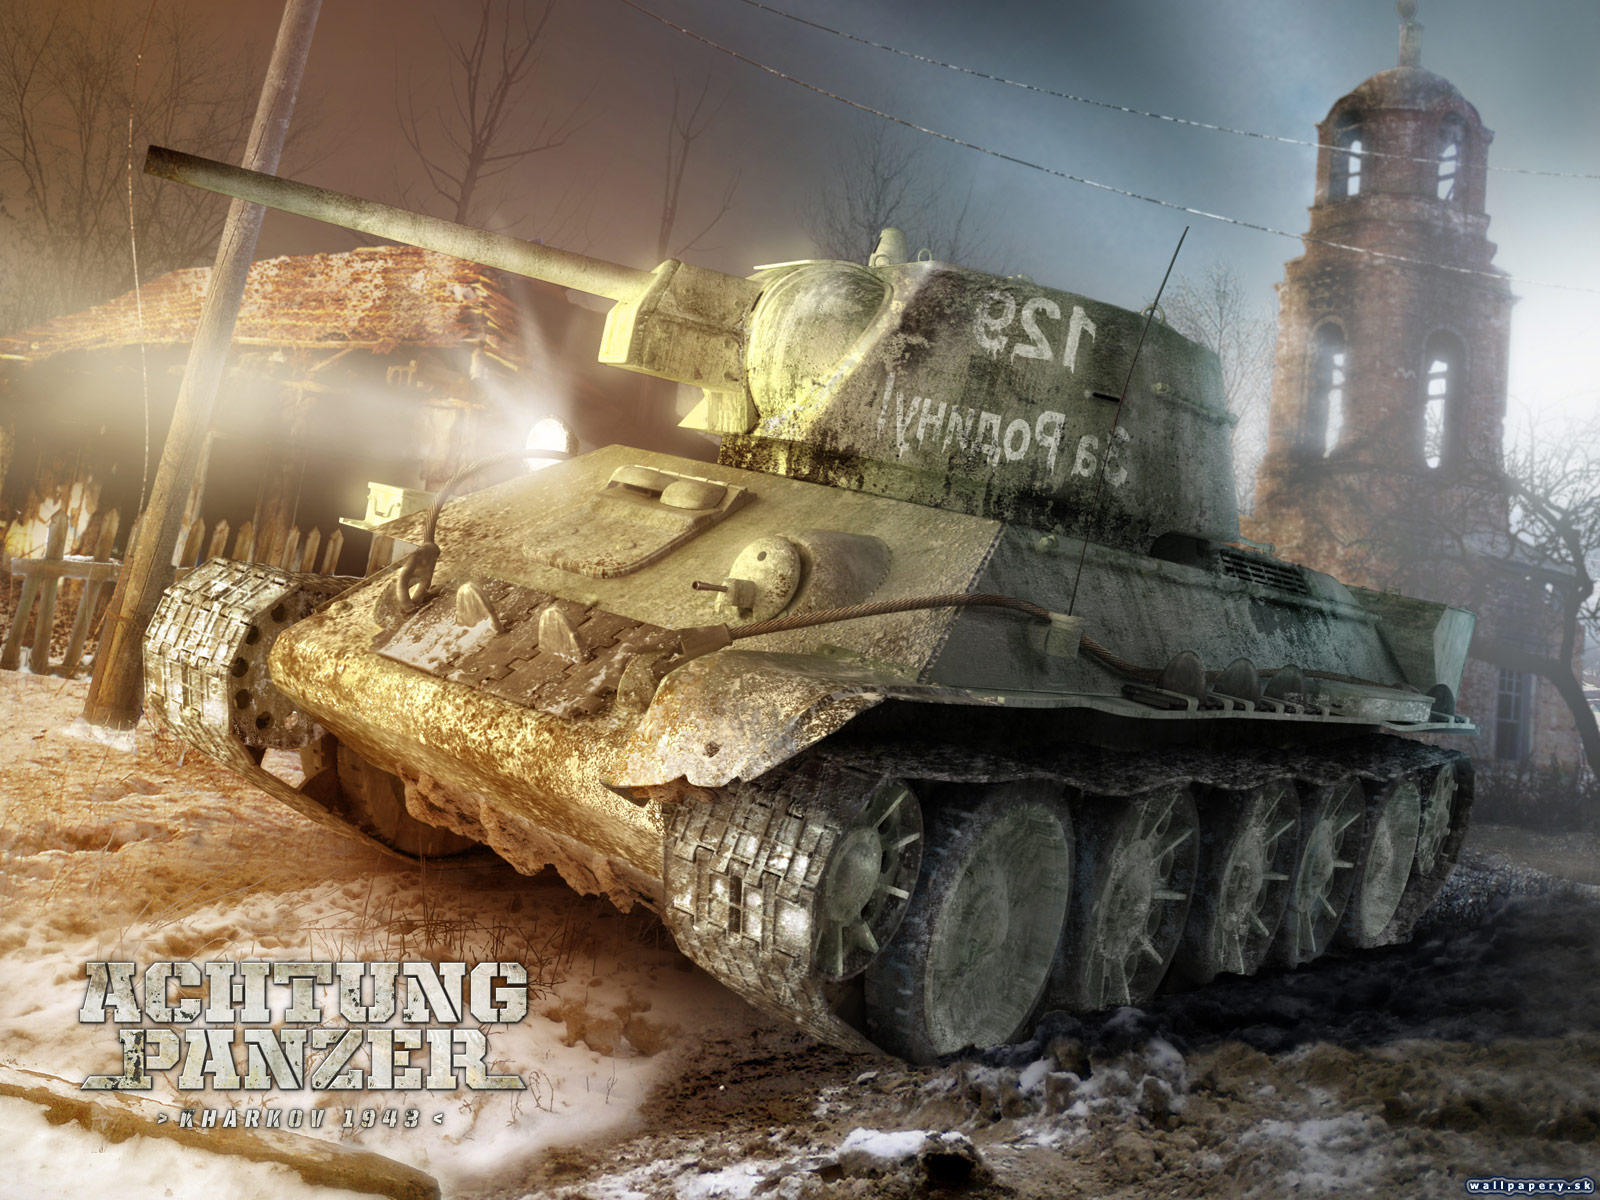 Achtung Panzer: Kharkov 1943 - wallpaper 2